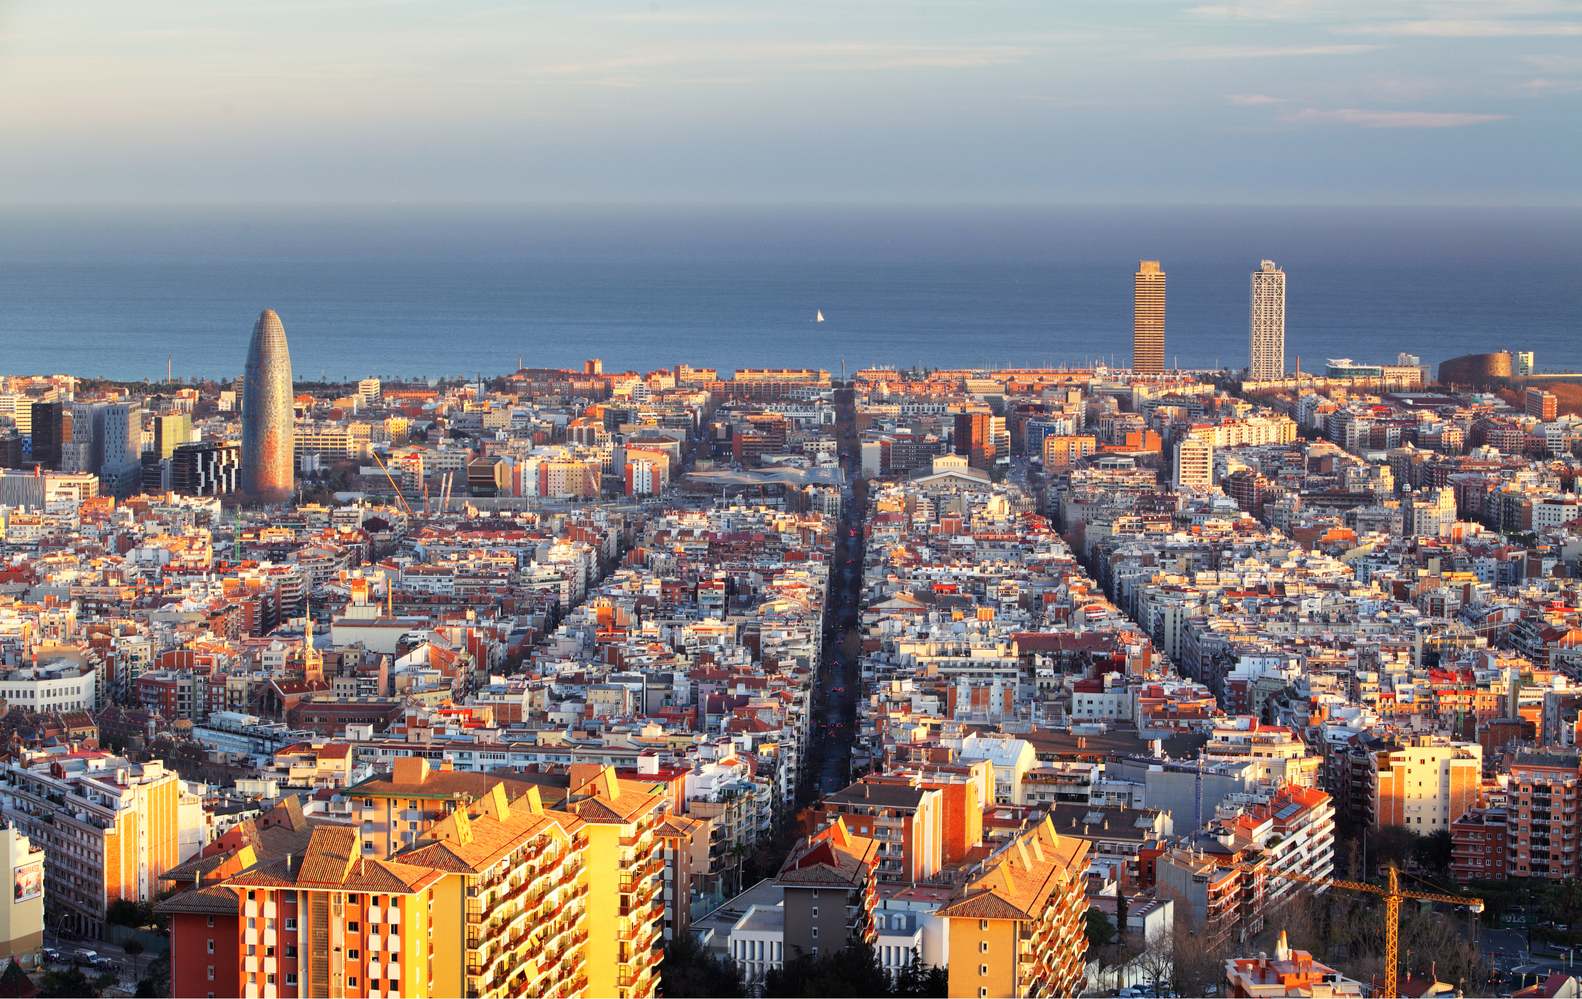 Барселона станет исследовательской лабораторией на Всемирном архитектурном конгрессе МАУ 2026 года.